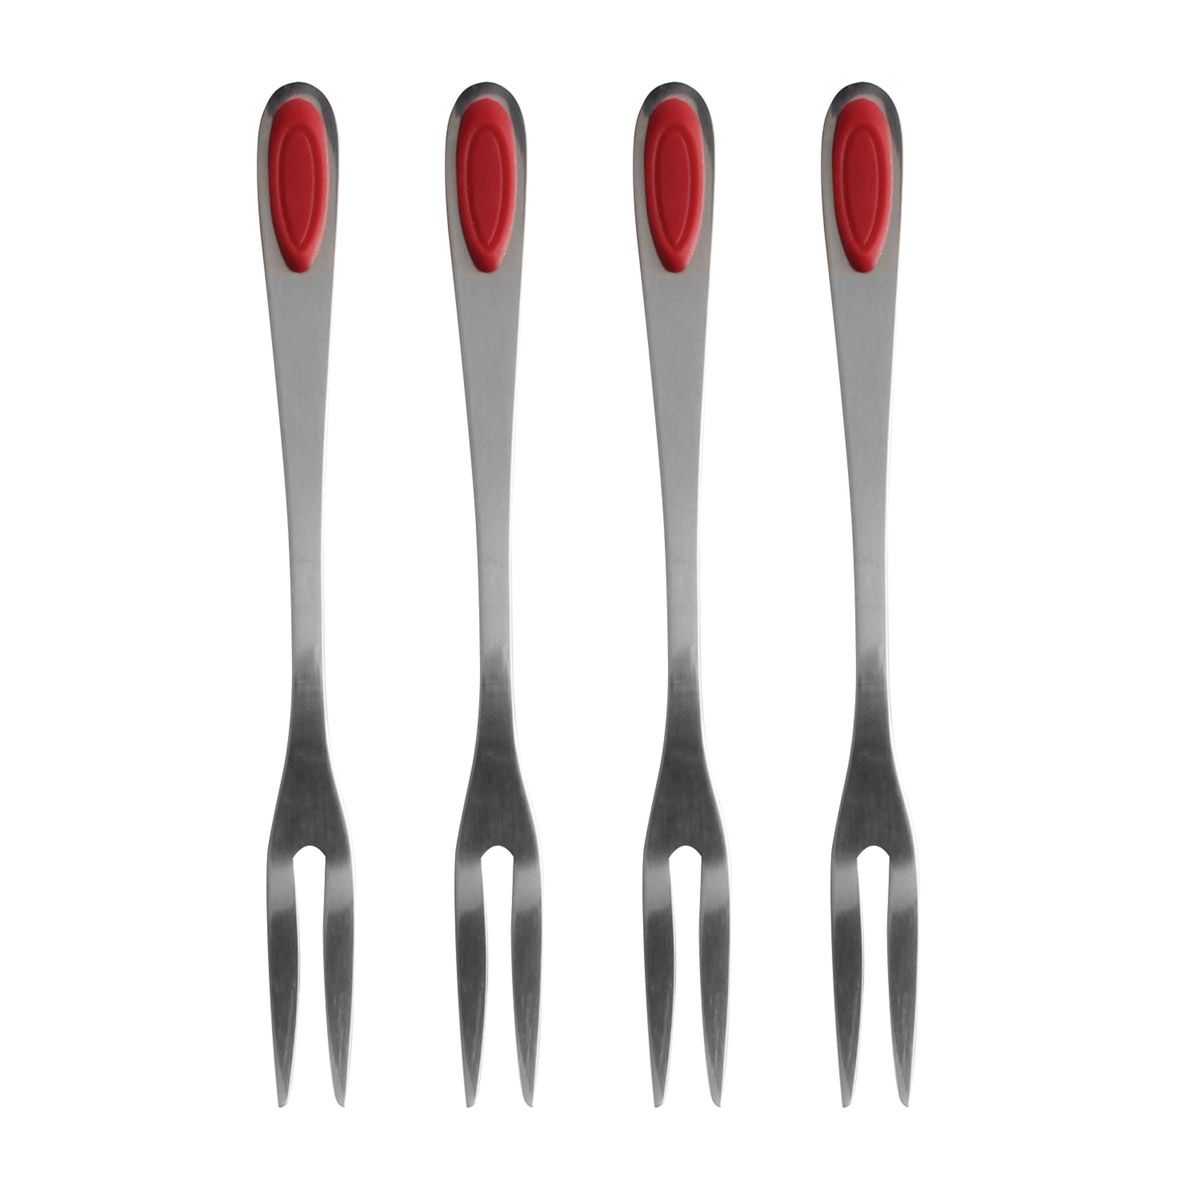 Seafood Forks - Set of 4